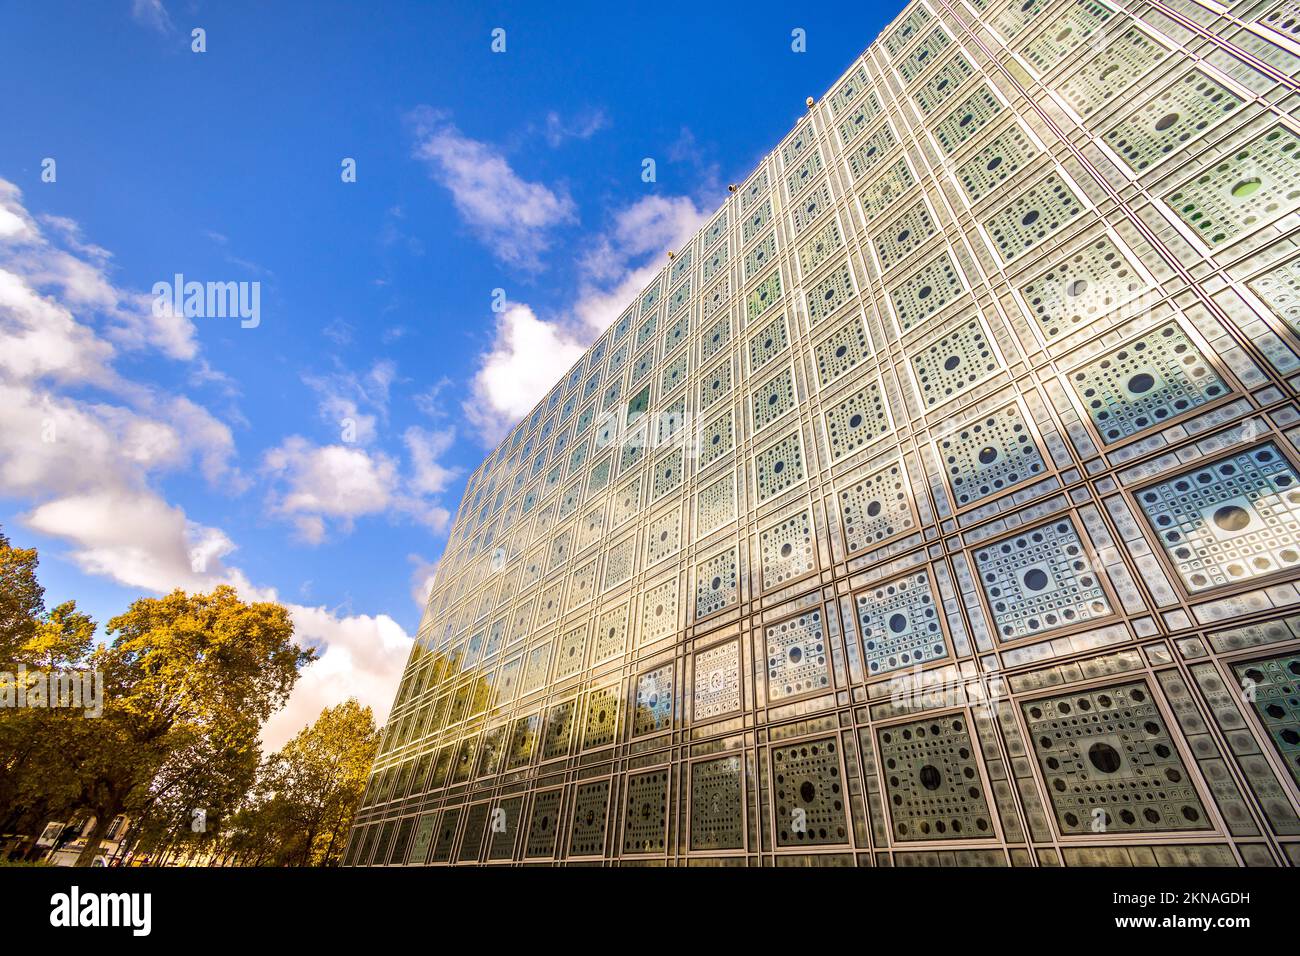 Esterno dell'Institut du Monde Arabe (Istituto del mondo arabo), Parigi, Francia. Foto Stock